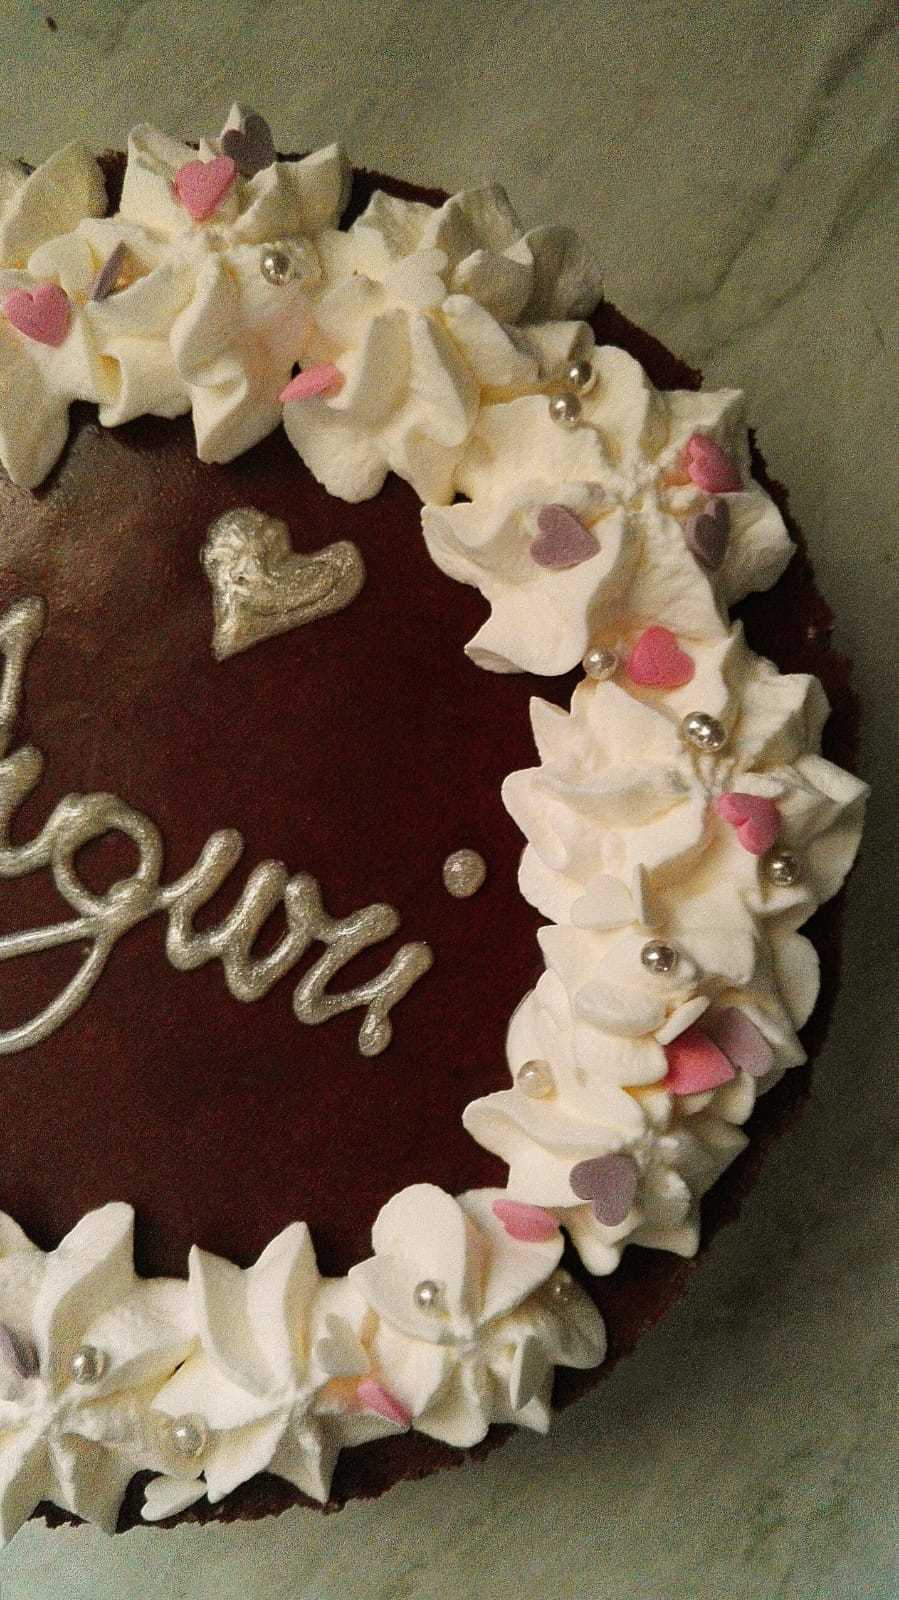 Cheesecake piccola al cioccolato  of Anna Venturato - Recipefy